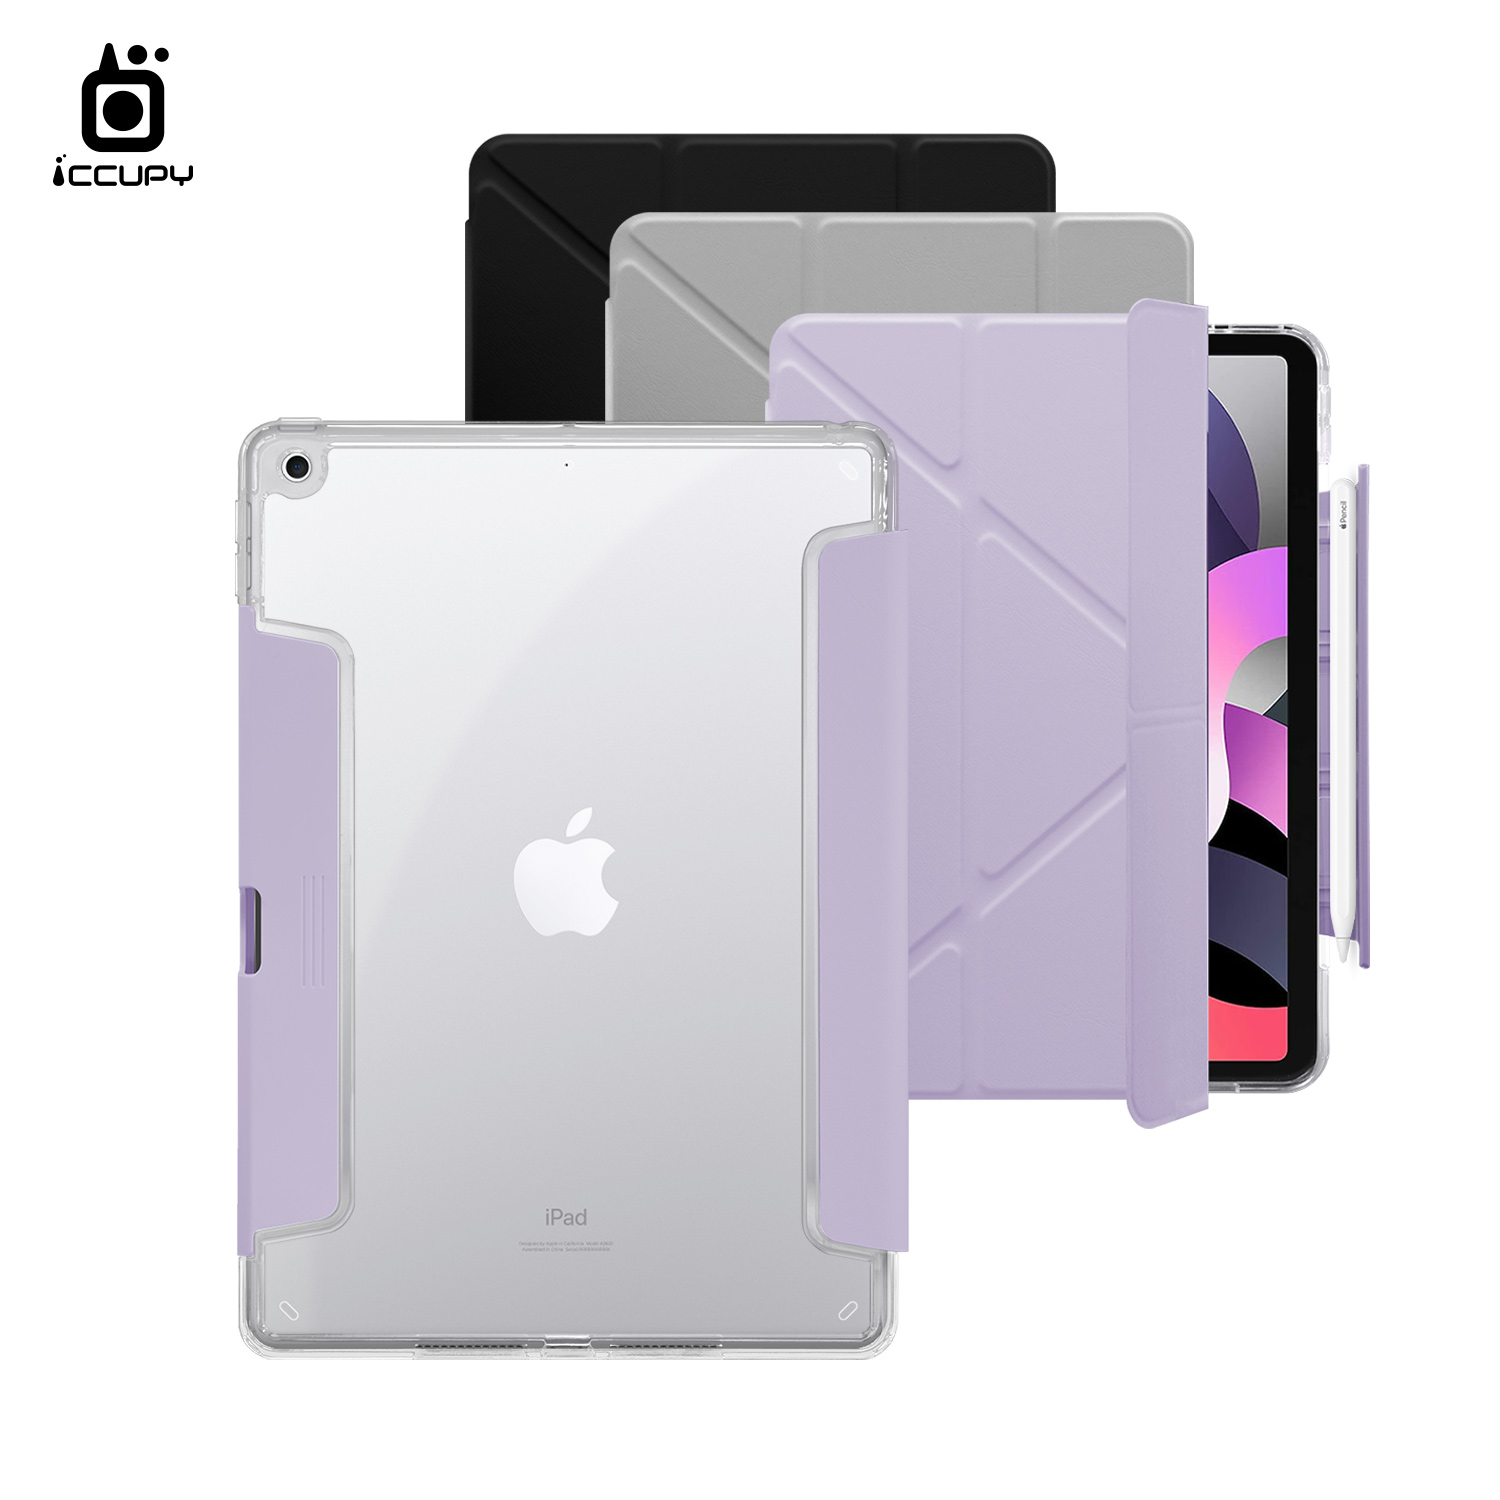 【iCCUPY黑占盾For iPad】黑占盾平板HD系列-隱藏式抽屜筆槽(共三色) For iPad 第7代 10.2吋